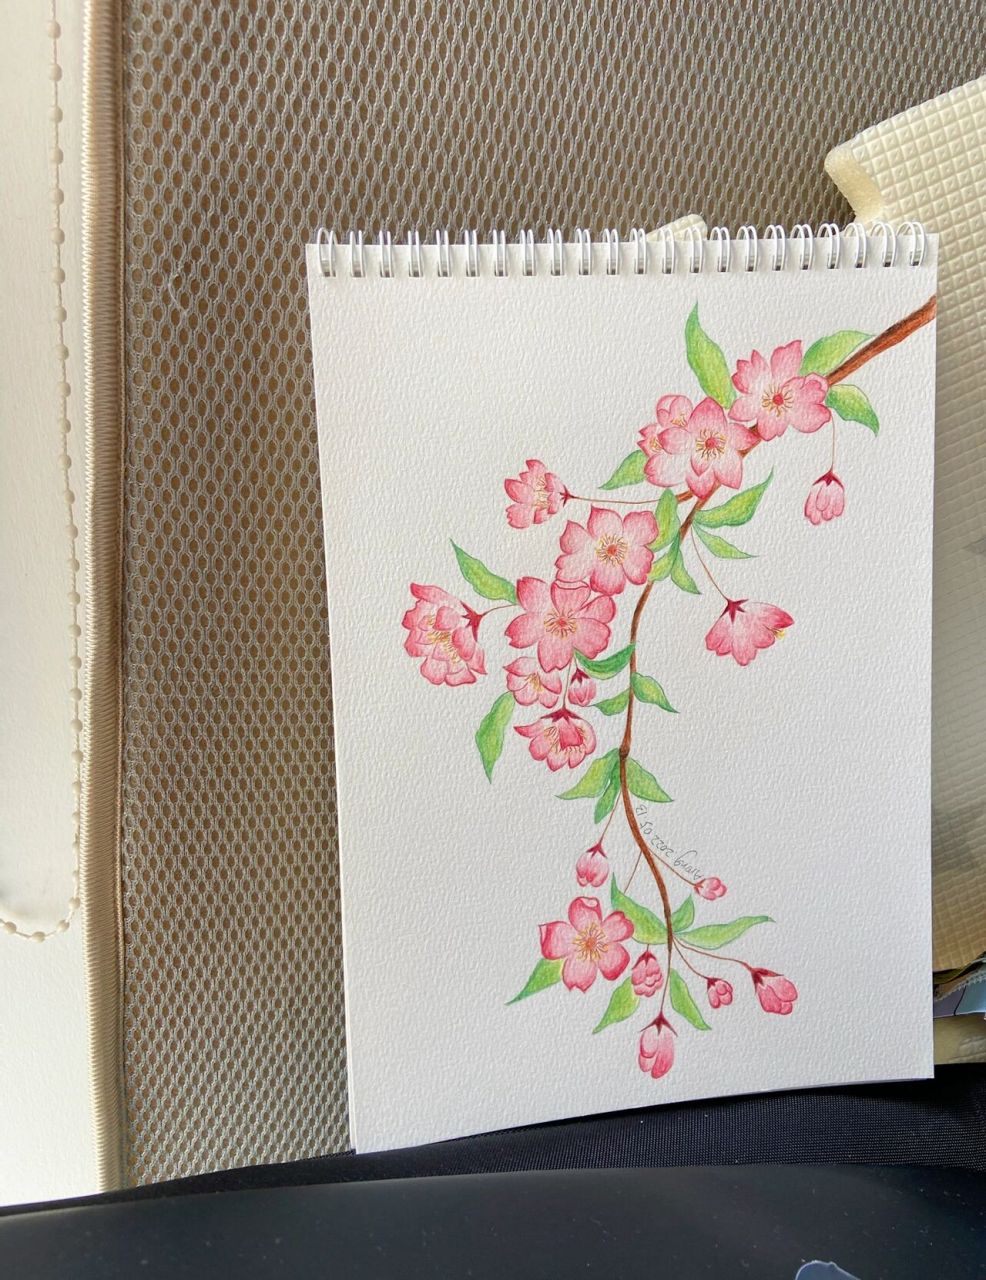 彩铅桃花 最近画花画得有点着迷,水溶性彩铅也可以有些许水彩的感觉